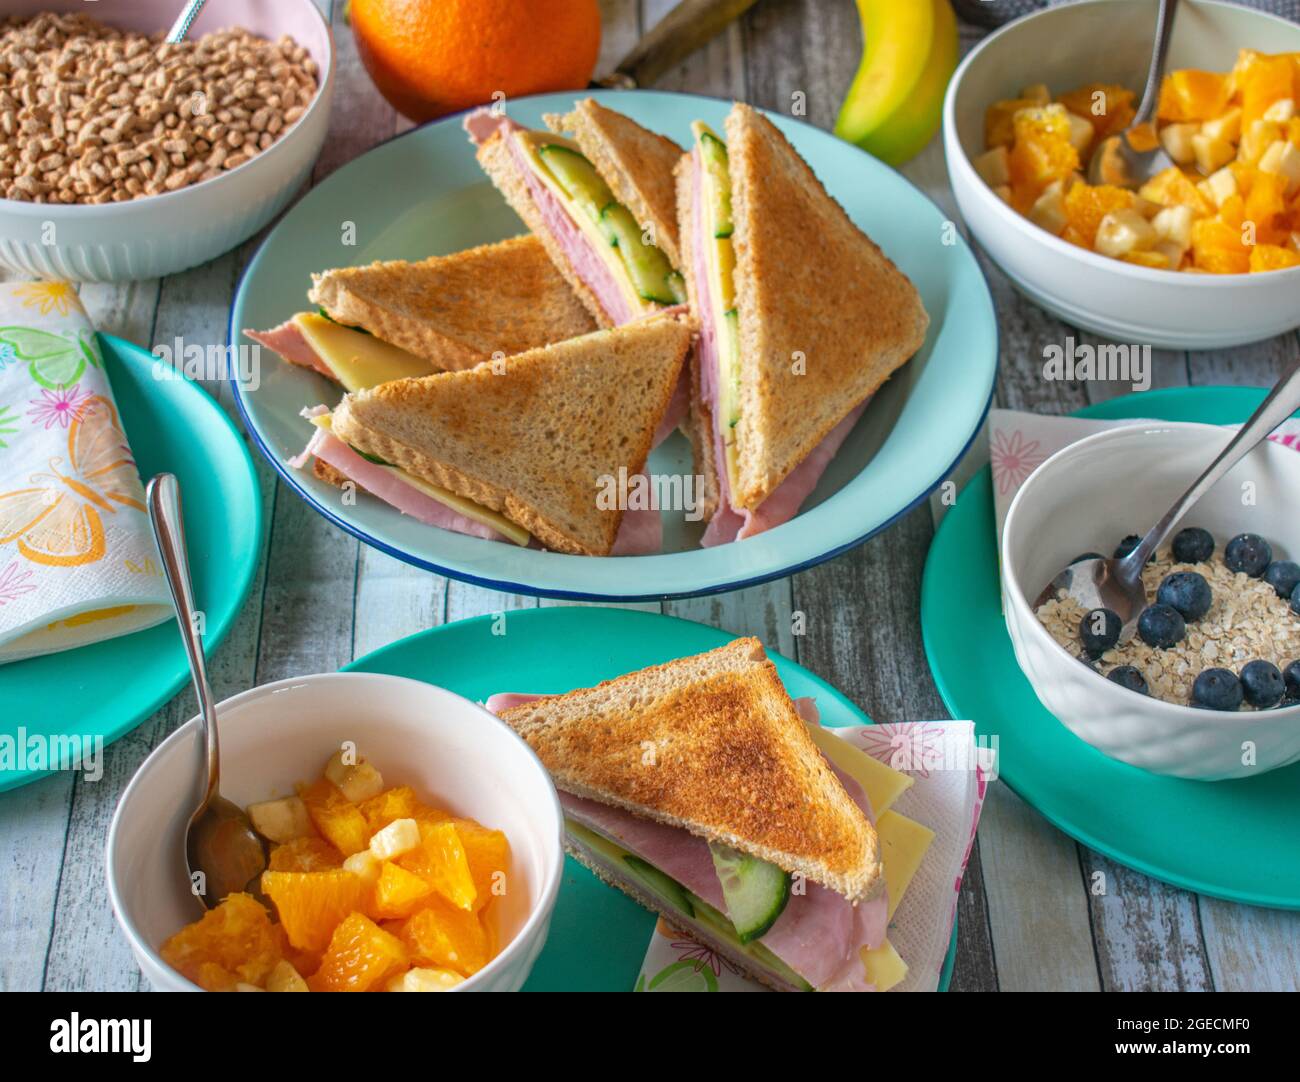 Vita domestica. Tavolo fisso con cibi sani per la colazione, come panini, cereali e frutta Foto Stock